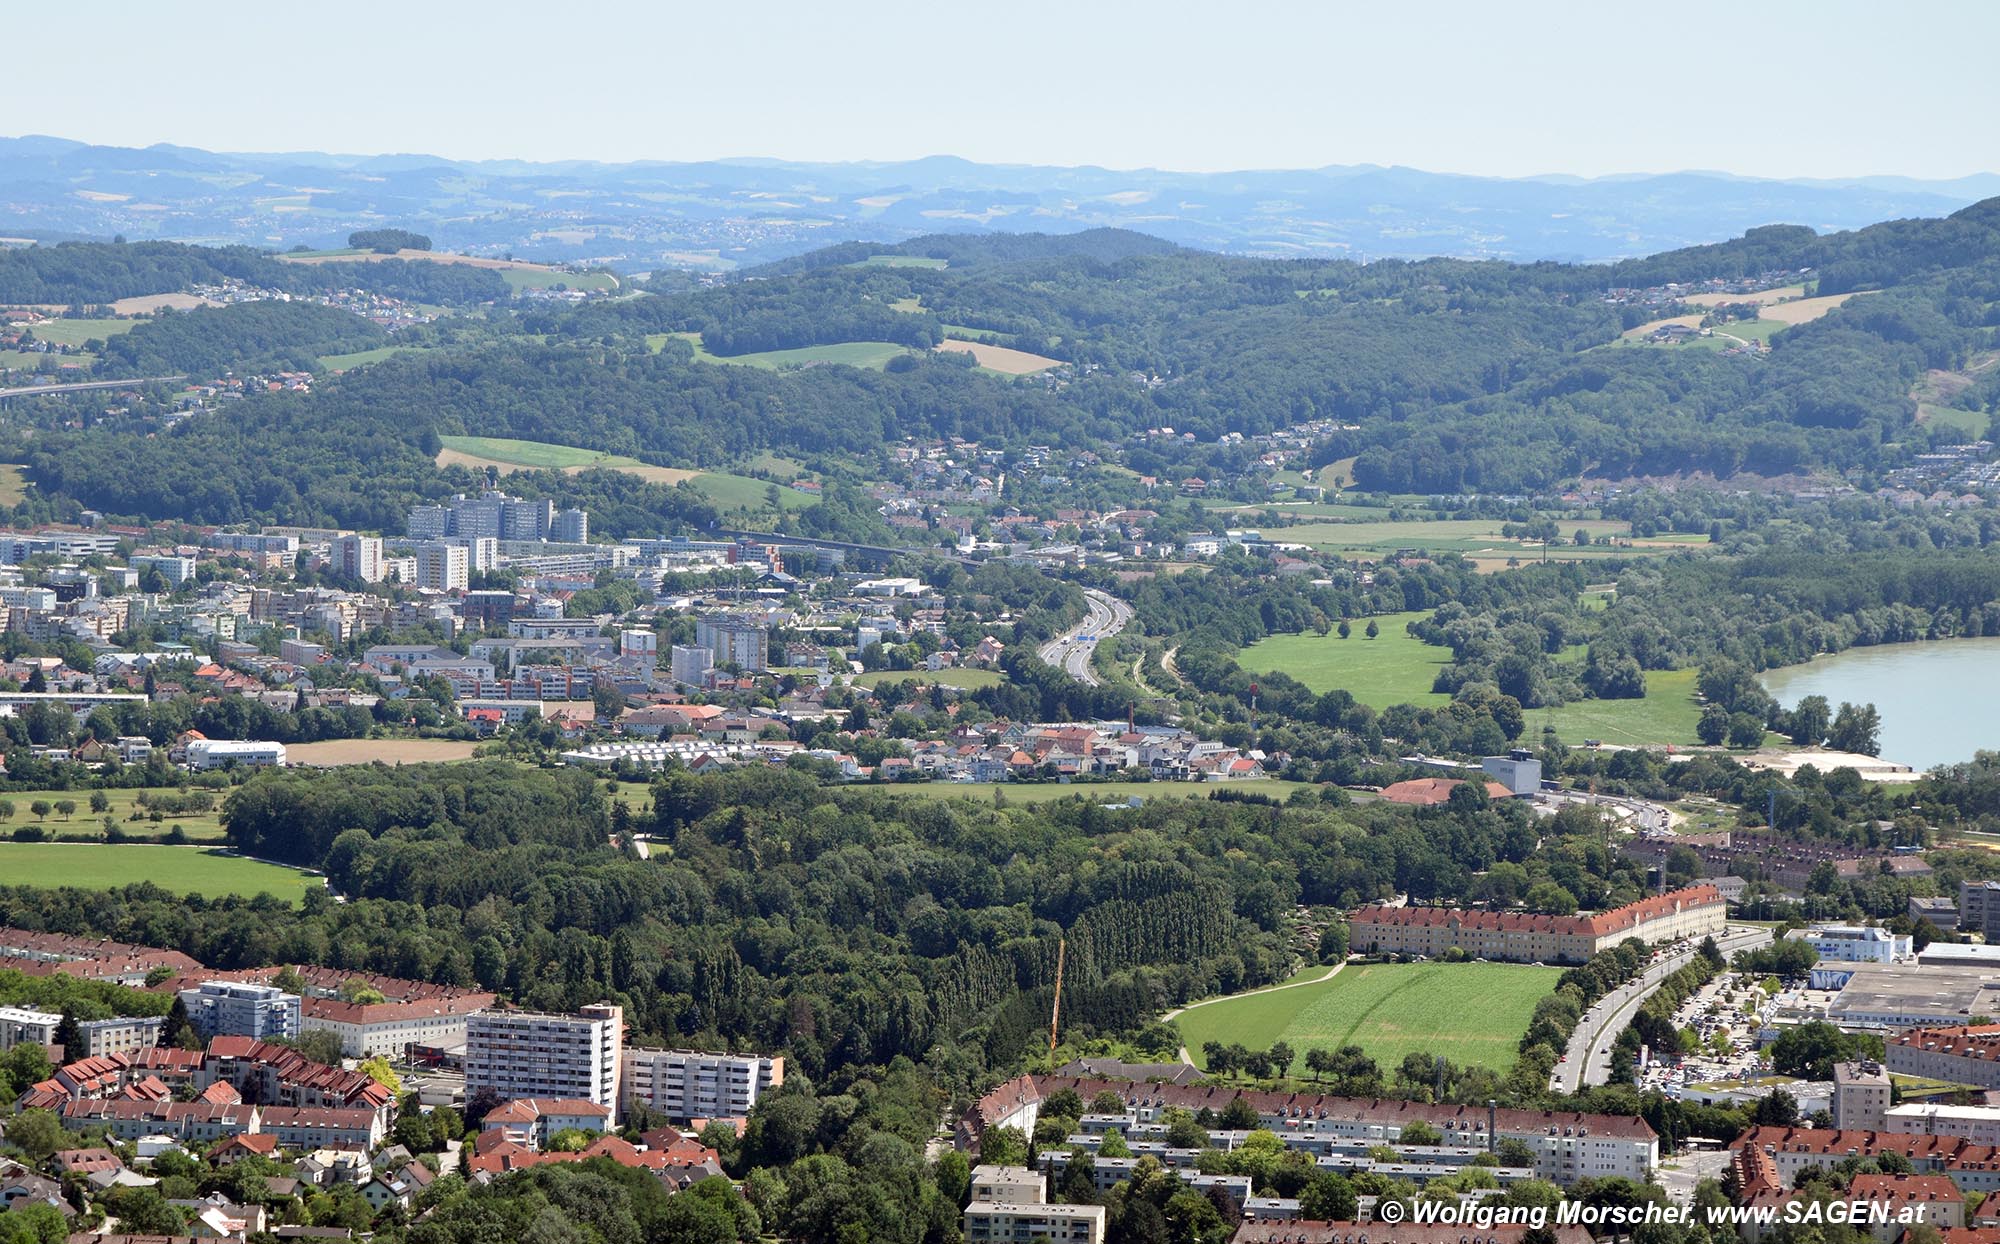 Blick auf Urfahr und Dornach in Linz vom Pöstlingberg